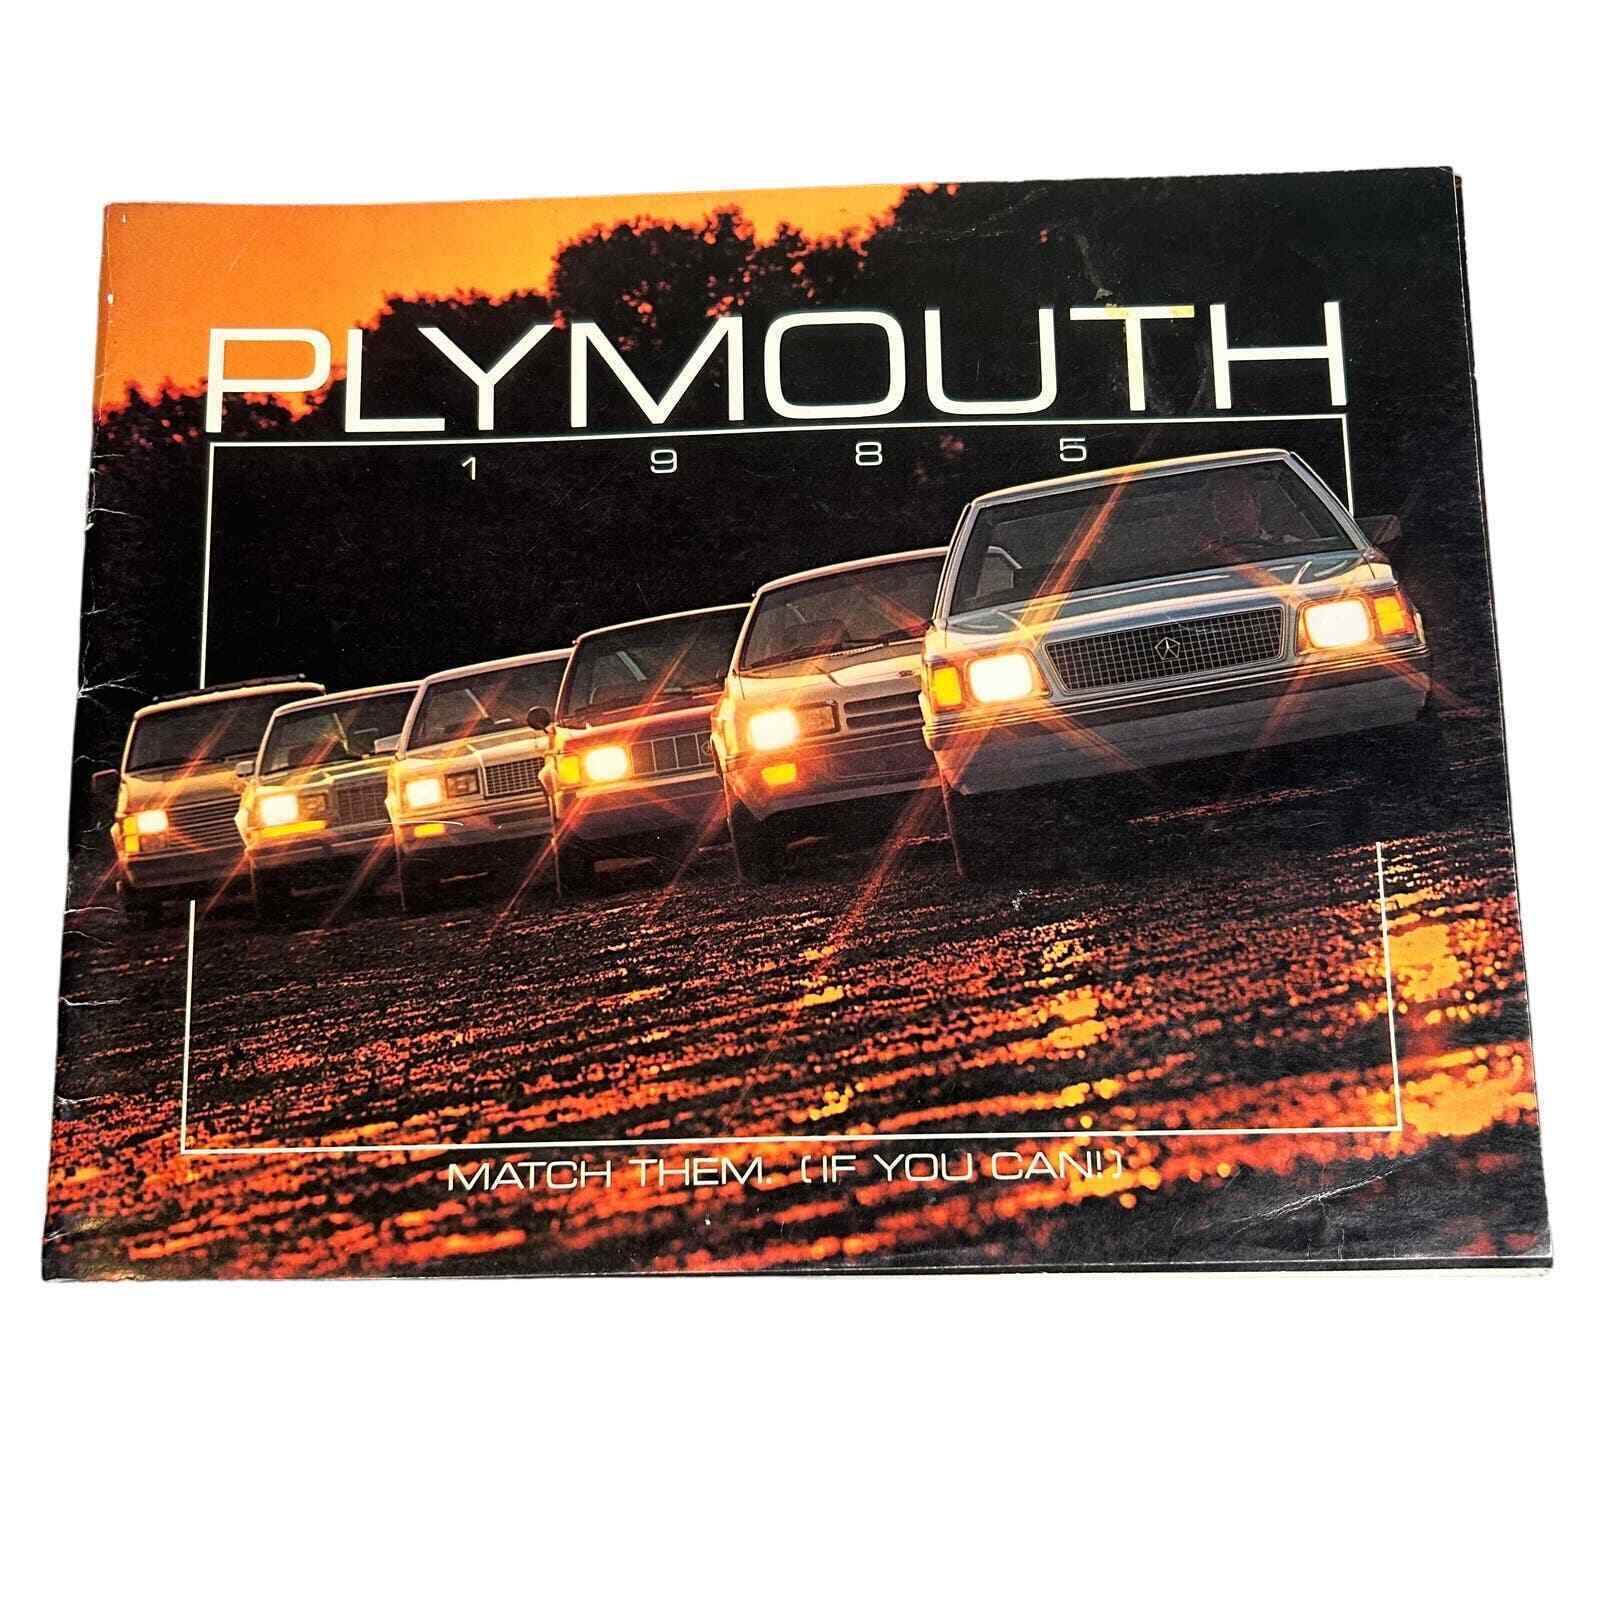 Vintage 1985 Plymouth Original 67 Page Dealer Sales Brochure